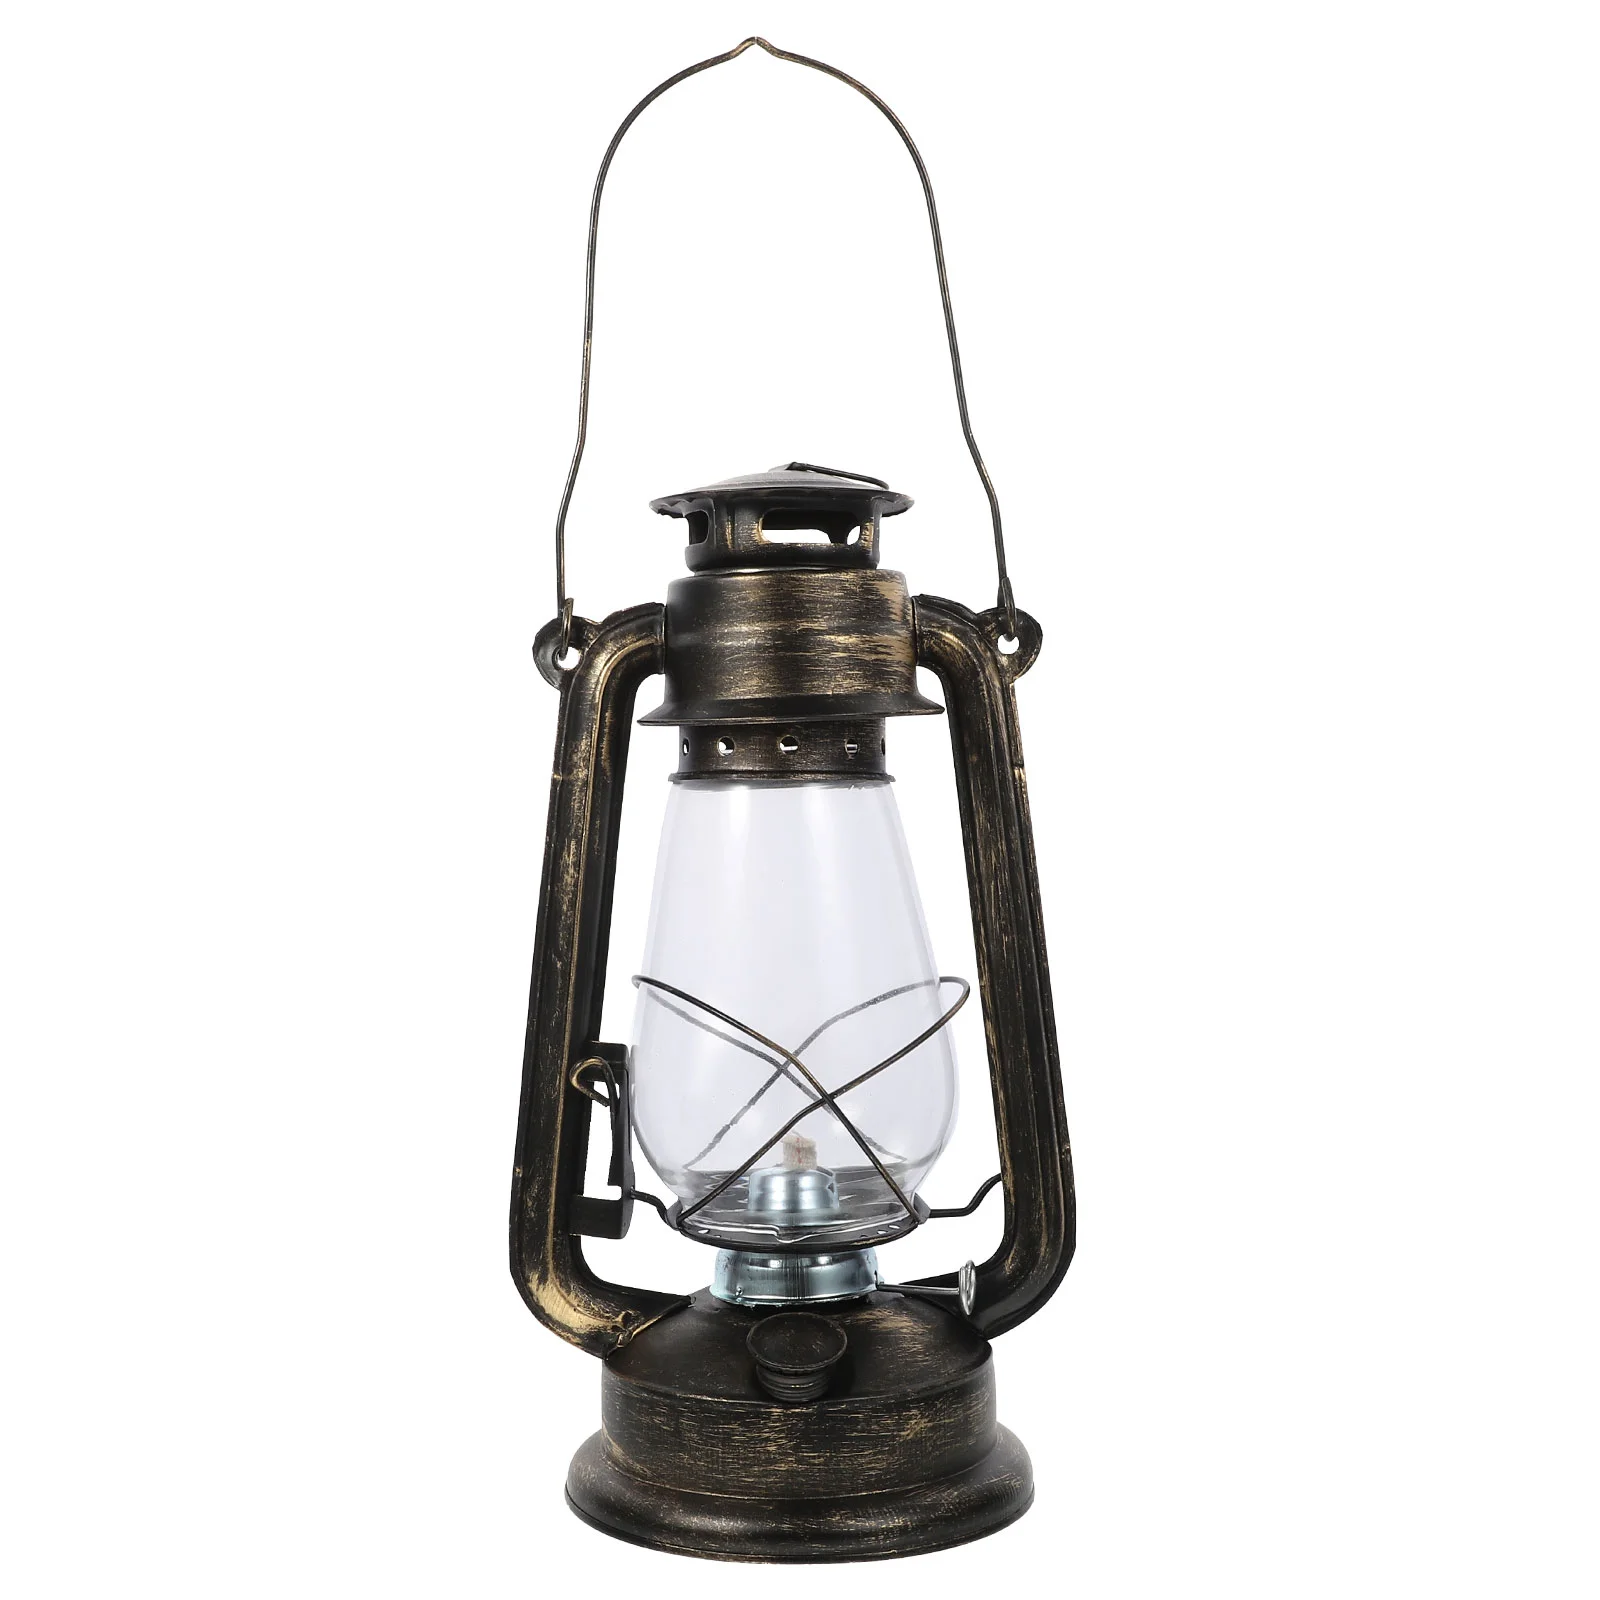 

Hanging Lamp Kerosene Lantern Oil Camping Light Lamps Use Indooremergency Iron Metalretro Heaters